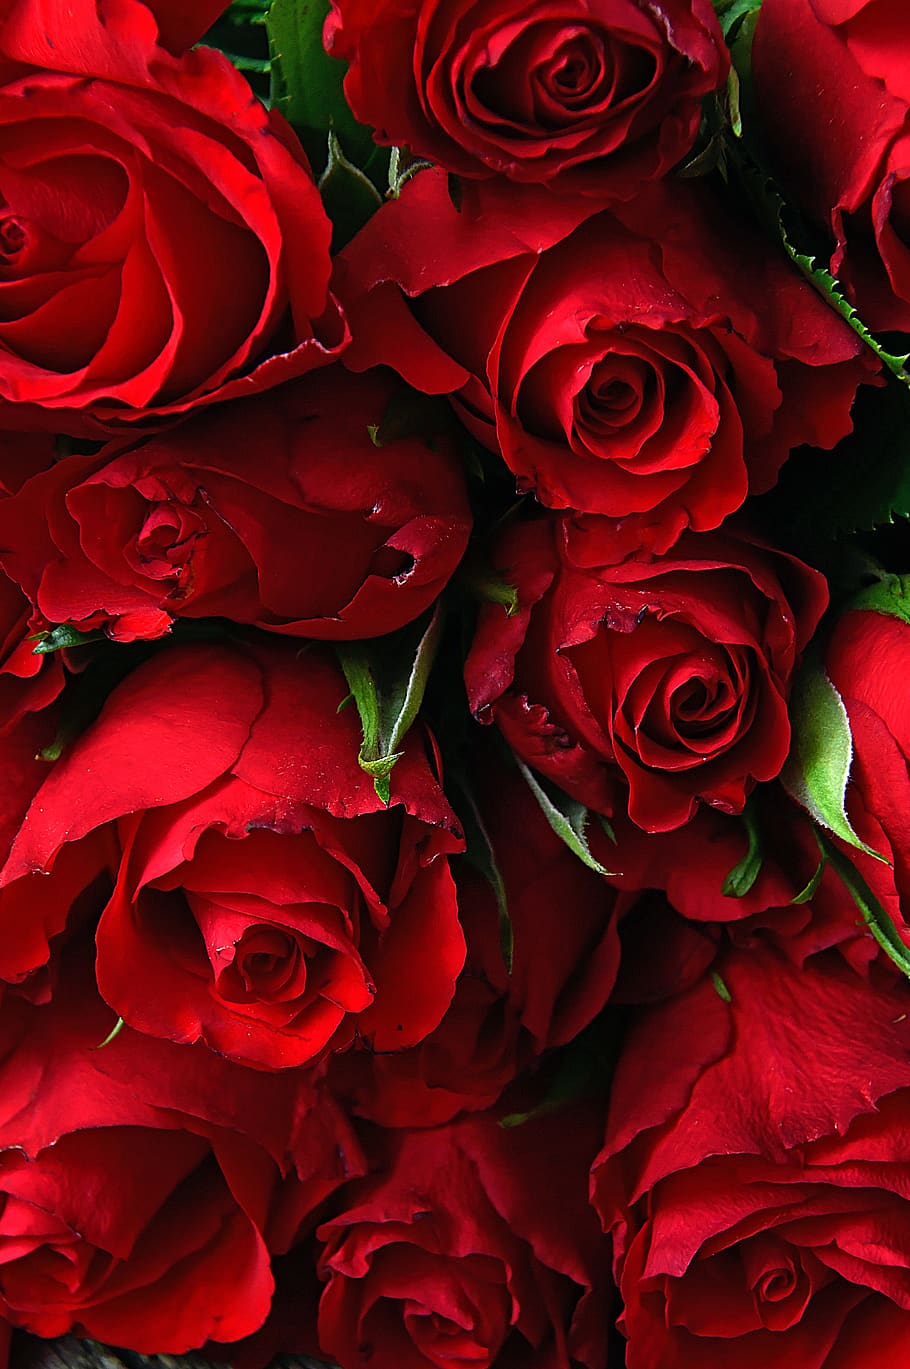 rosa, dia dos namorados, romântico, romance, amor, bom, papel de parede, flor, flores, símbolo